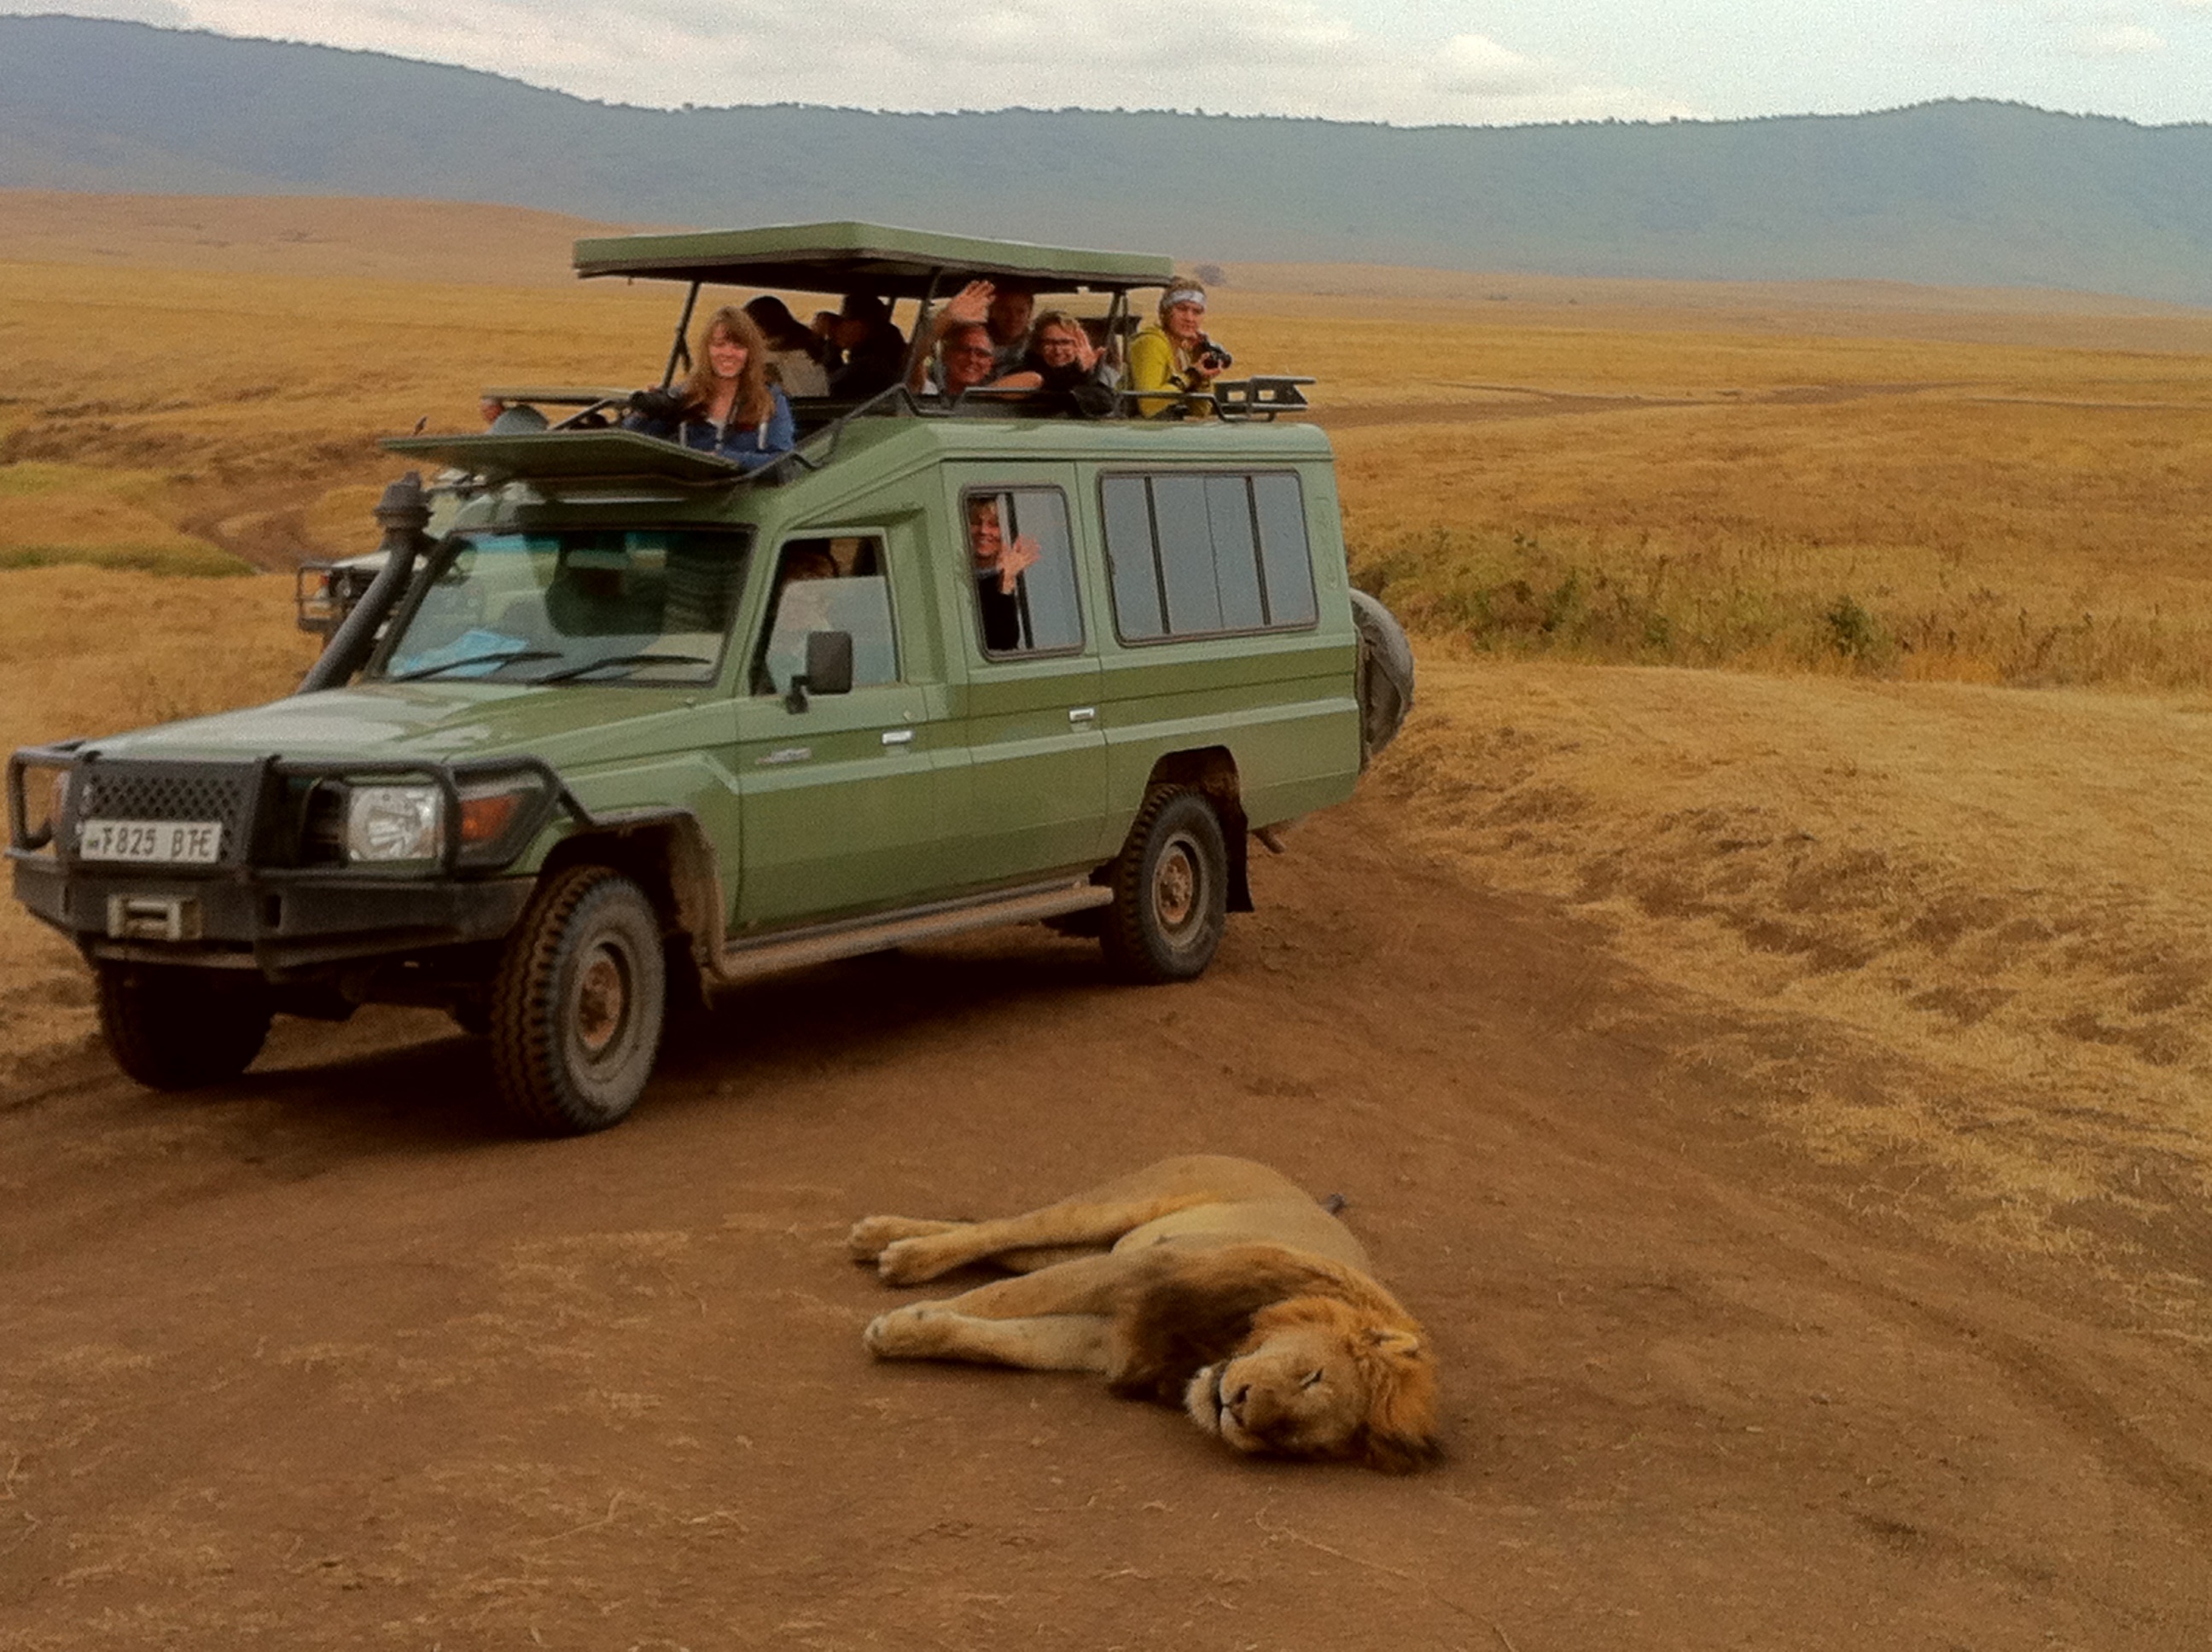 Fernreisen mit Kindern: Warum Fernreisen als Familie - Indien mit Kindern - Löwe und Jeep in Tansania